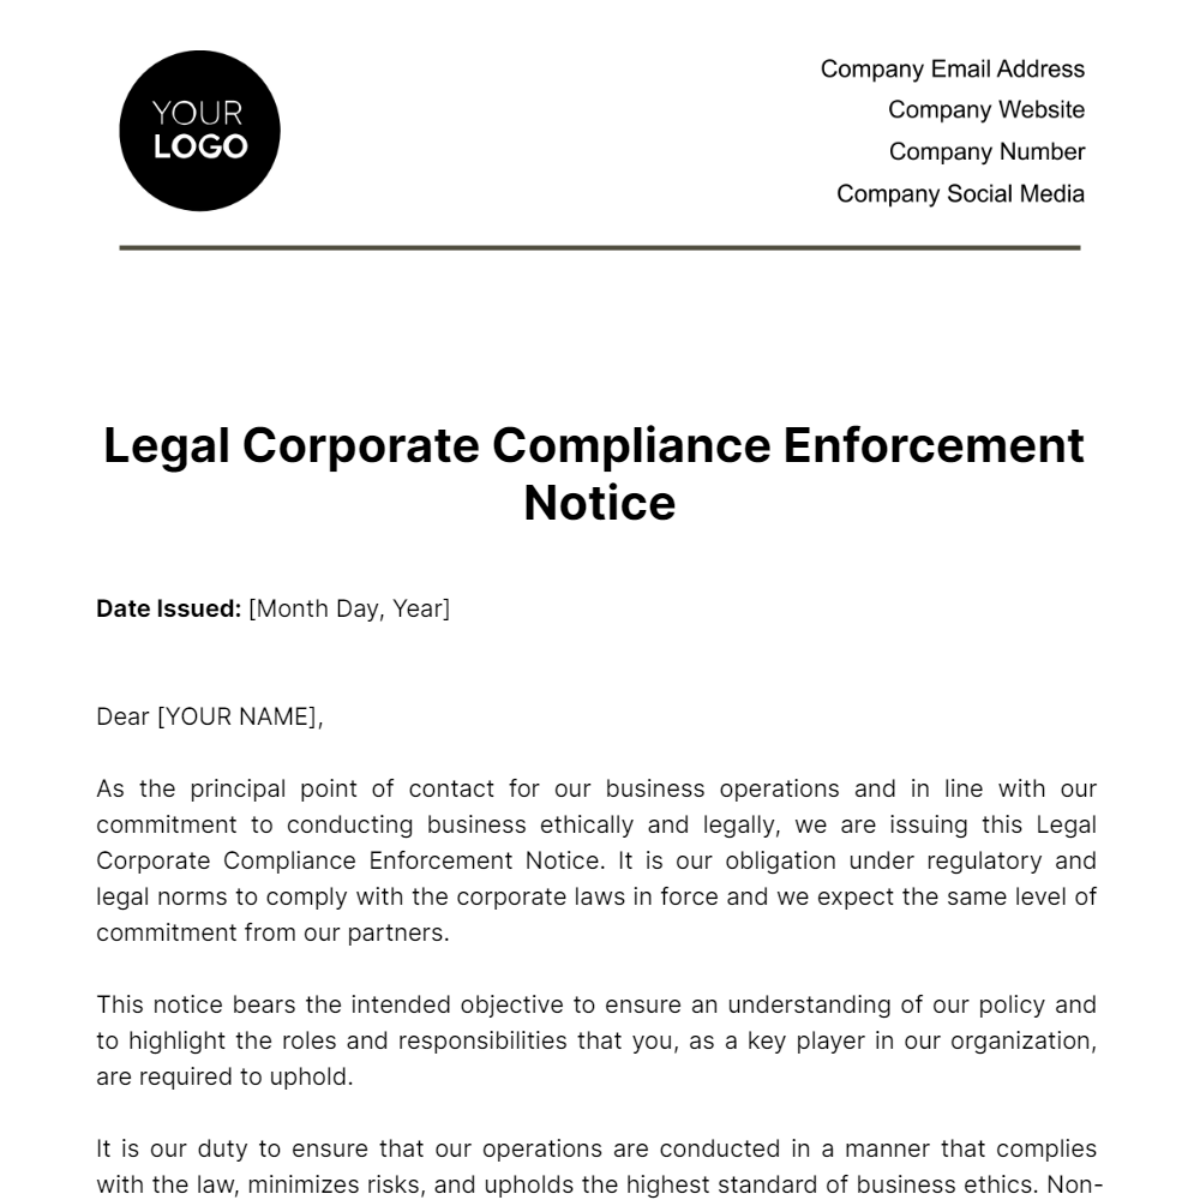 Legal Corporate Compliance Enforcement Notice Template